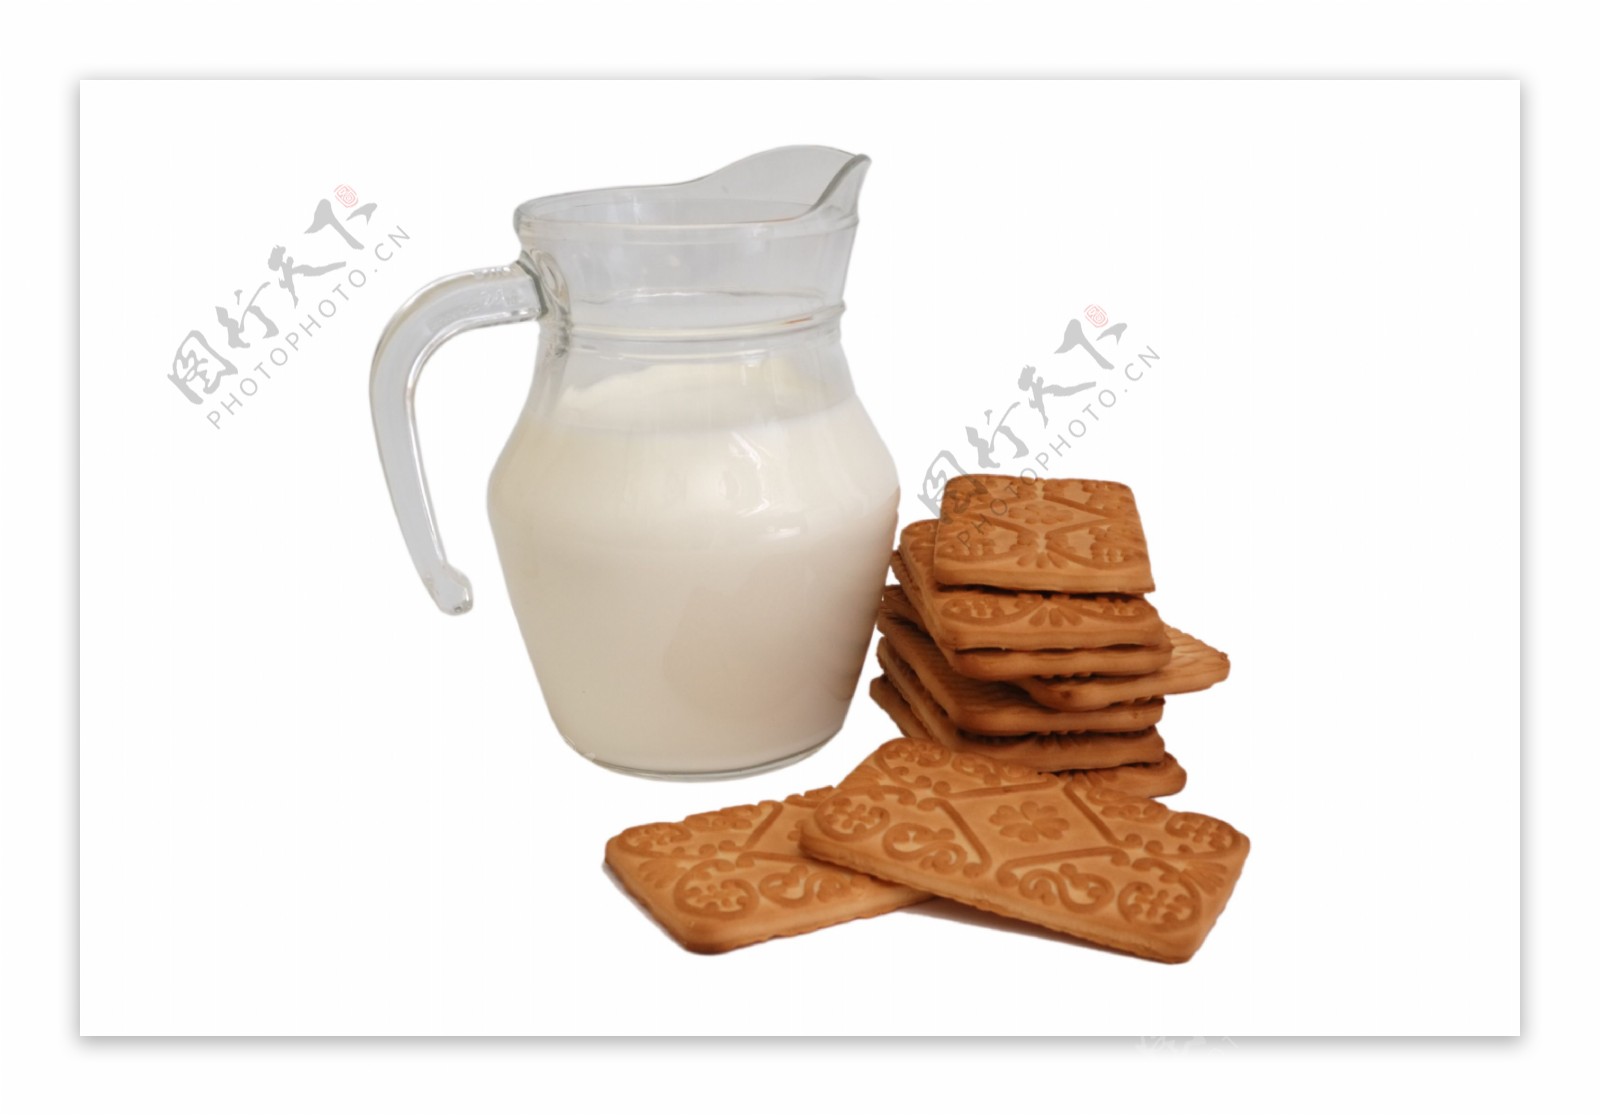 钙奶饼干儿童早餐高钙食品怀旧零食山东青岛无糖营养泡牛奶-阿里巴巴